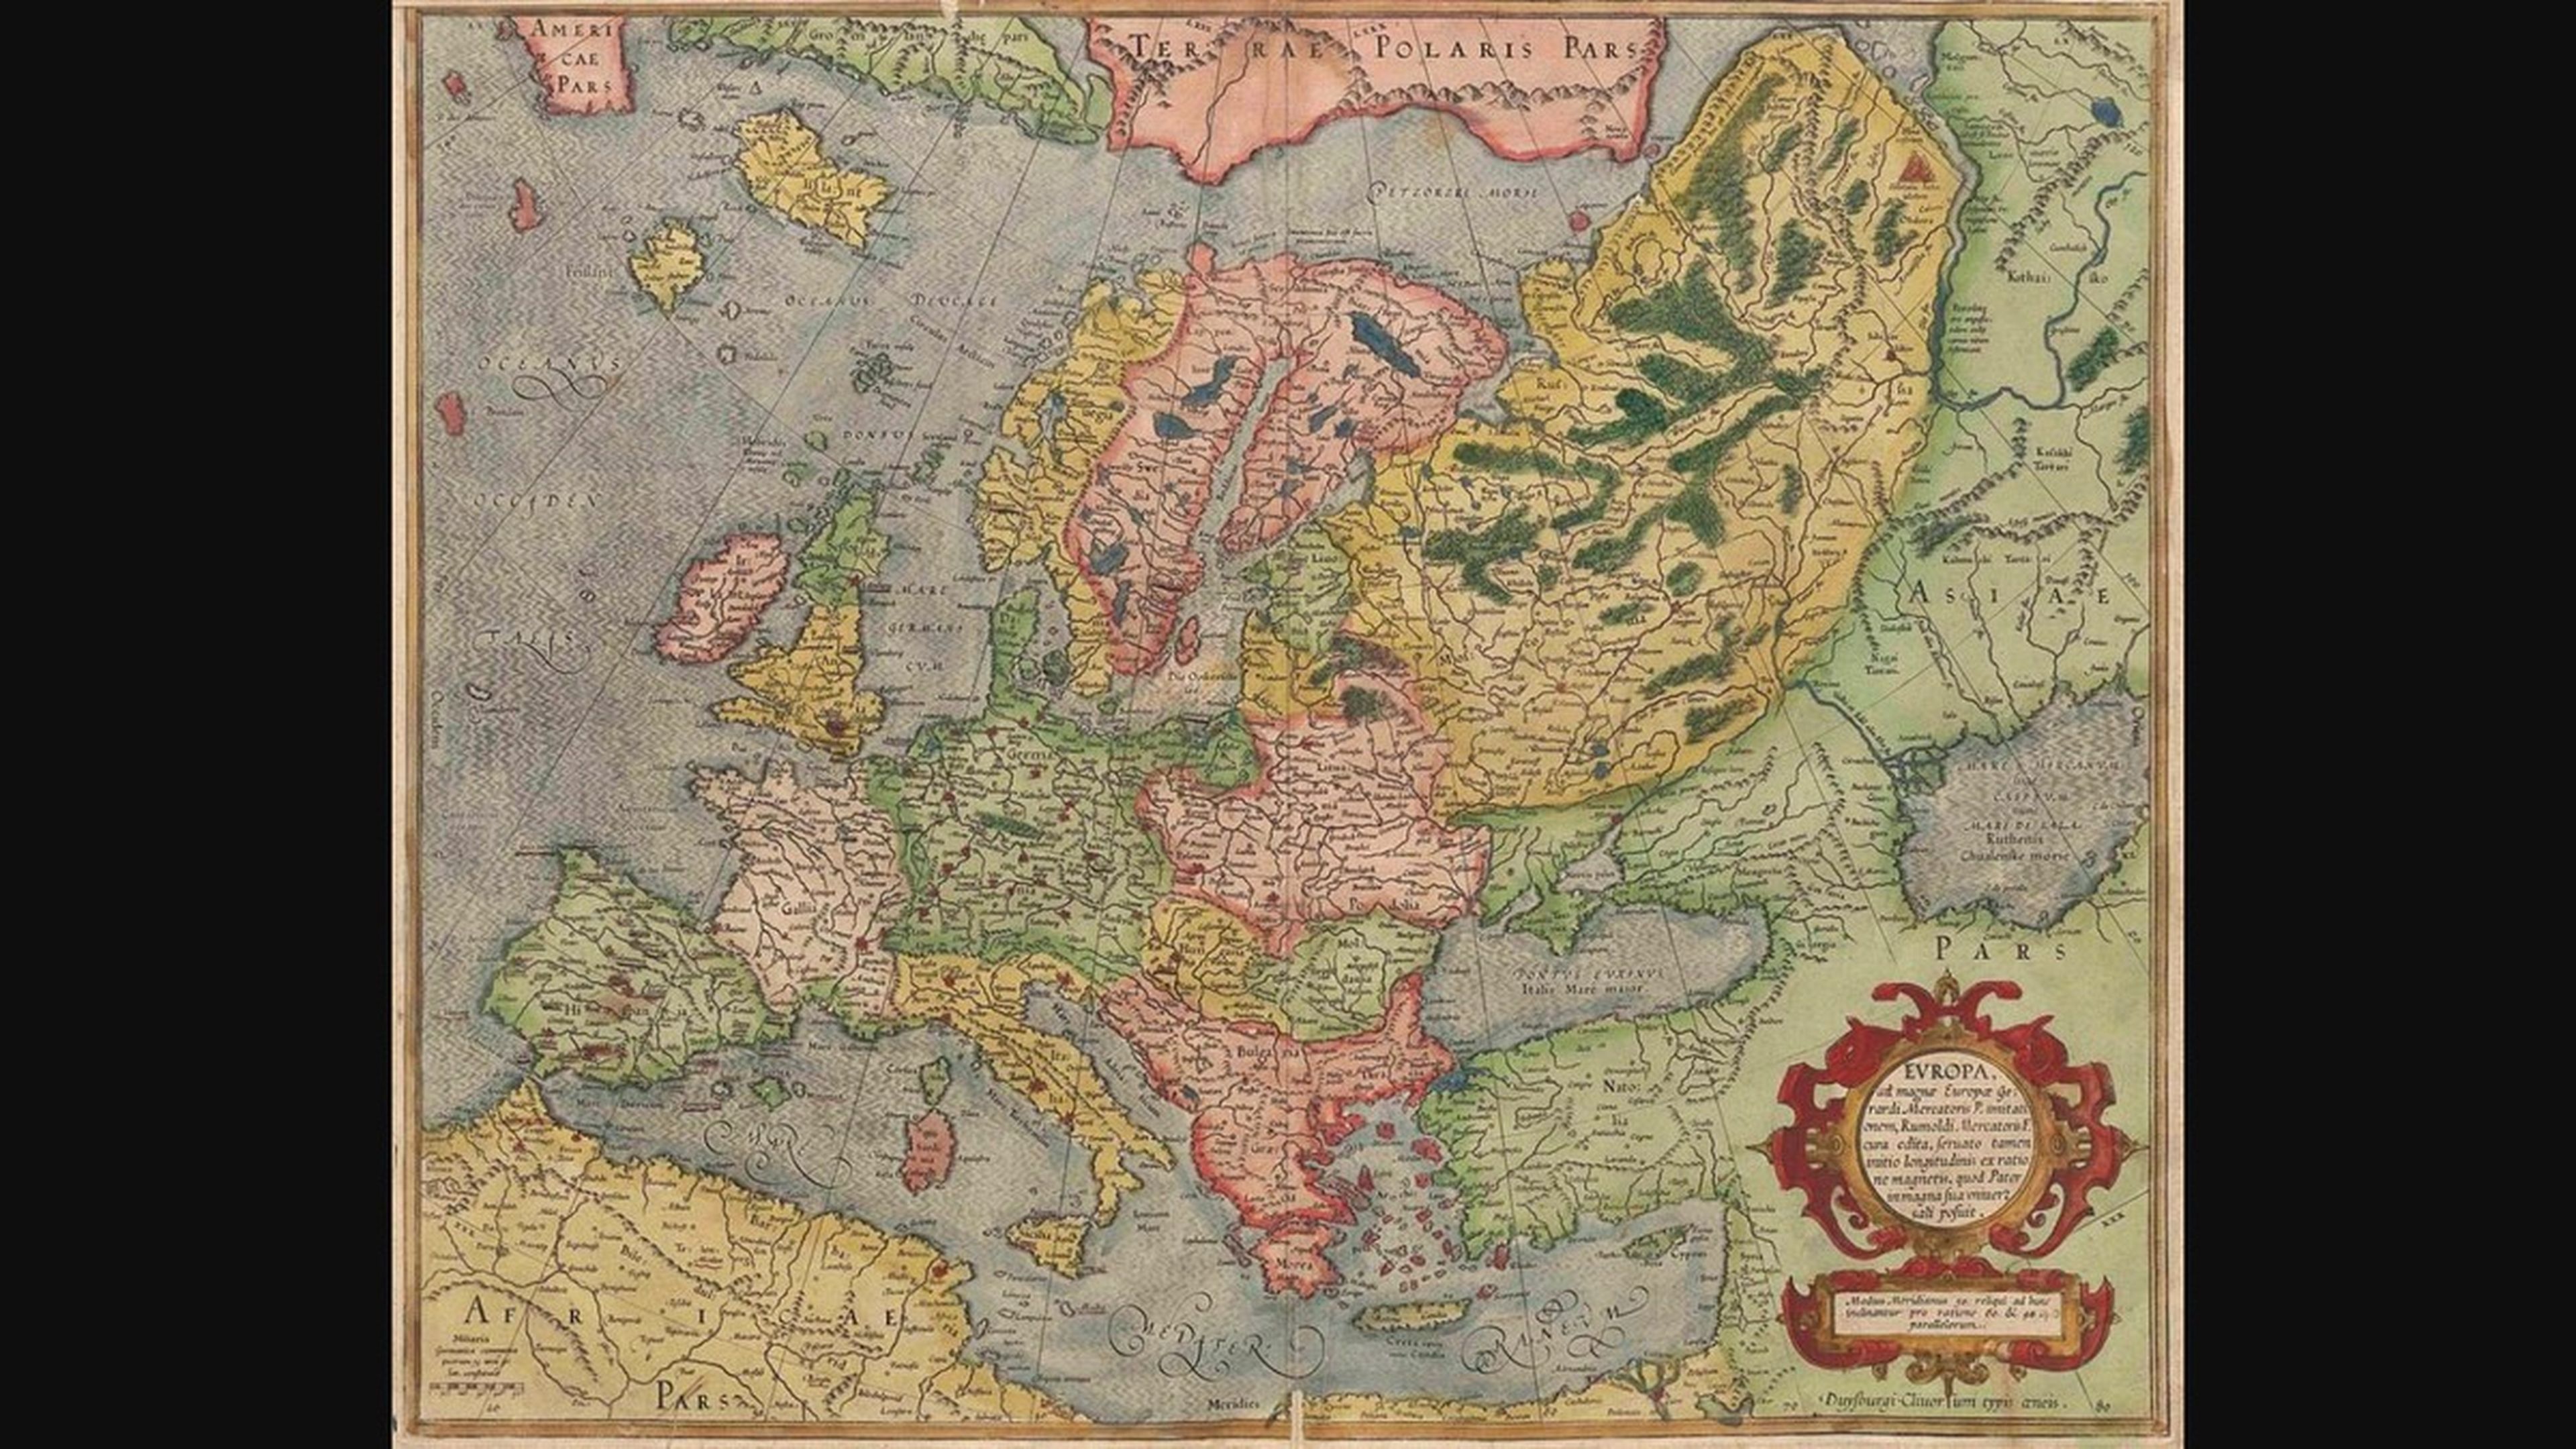 Dónde descargar mapas de Europa en color, en blanco y negro y más